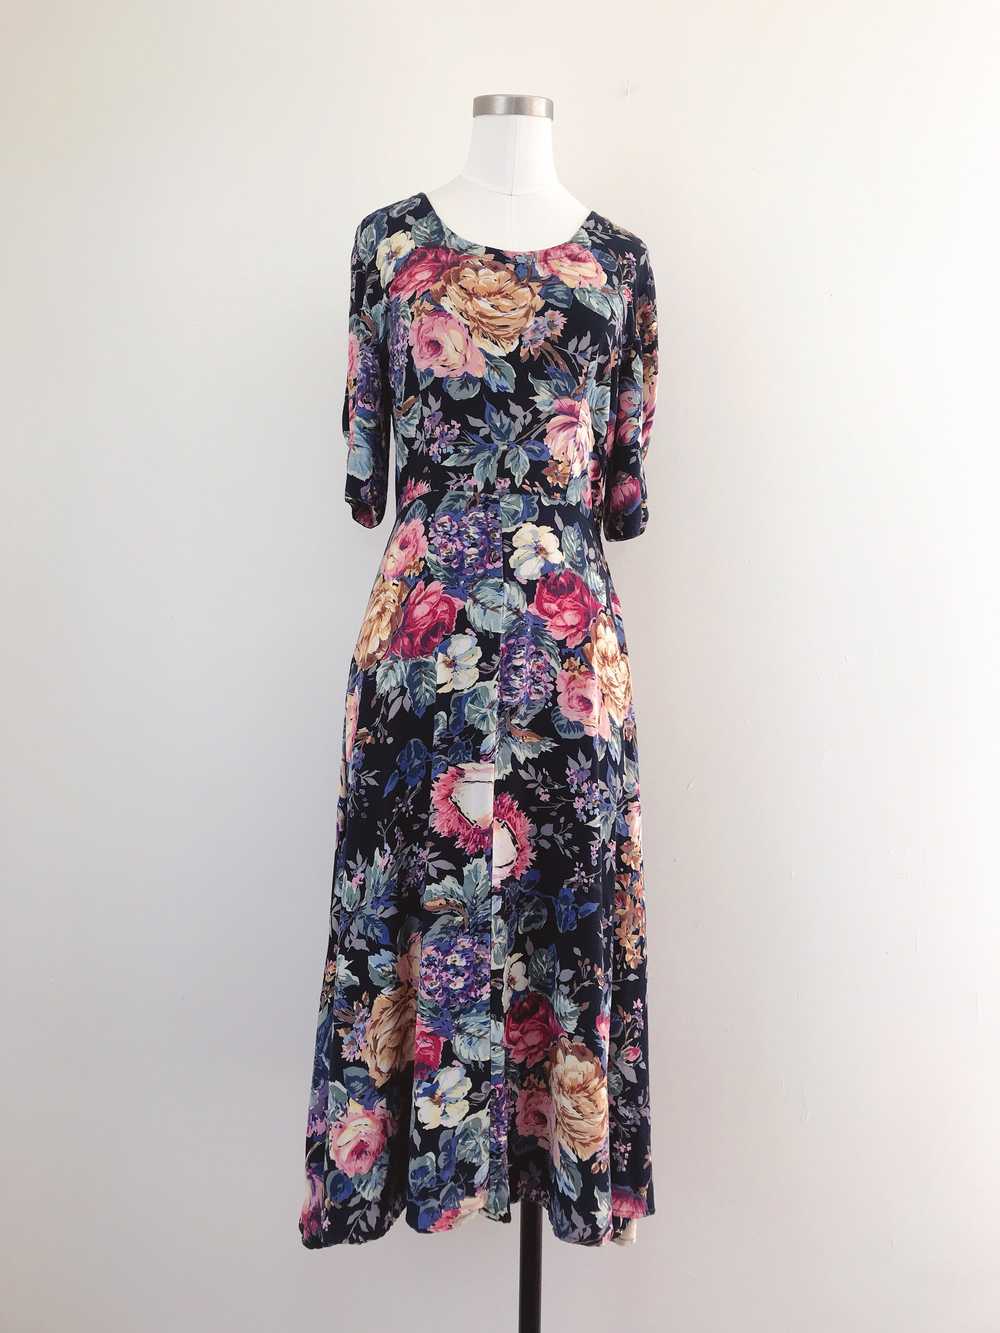 1990s Dark Floral Dress - image 1